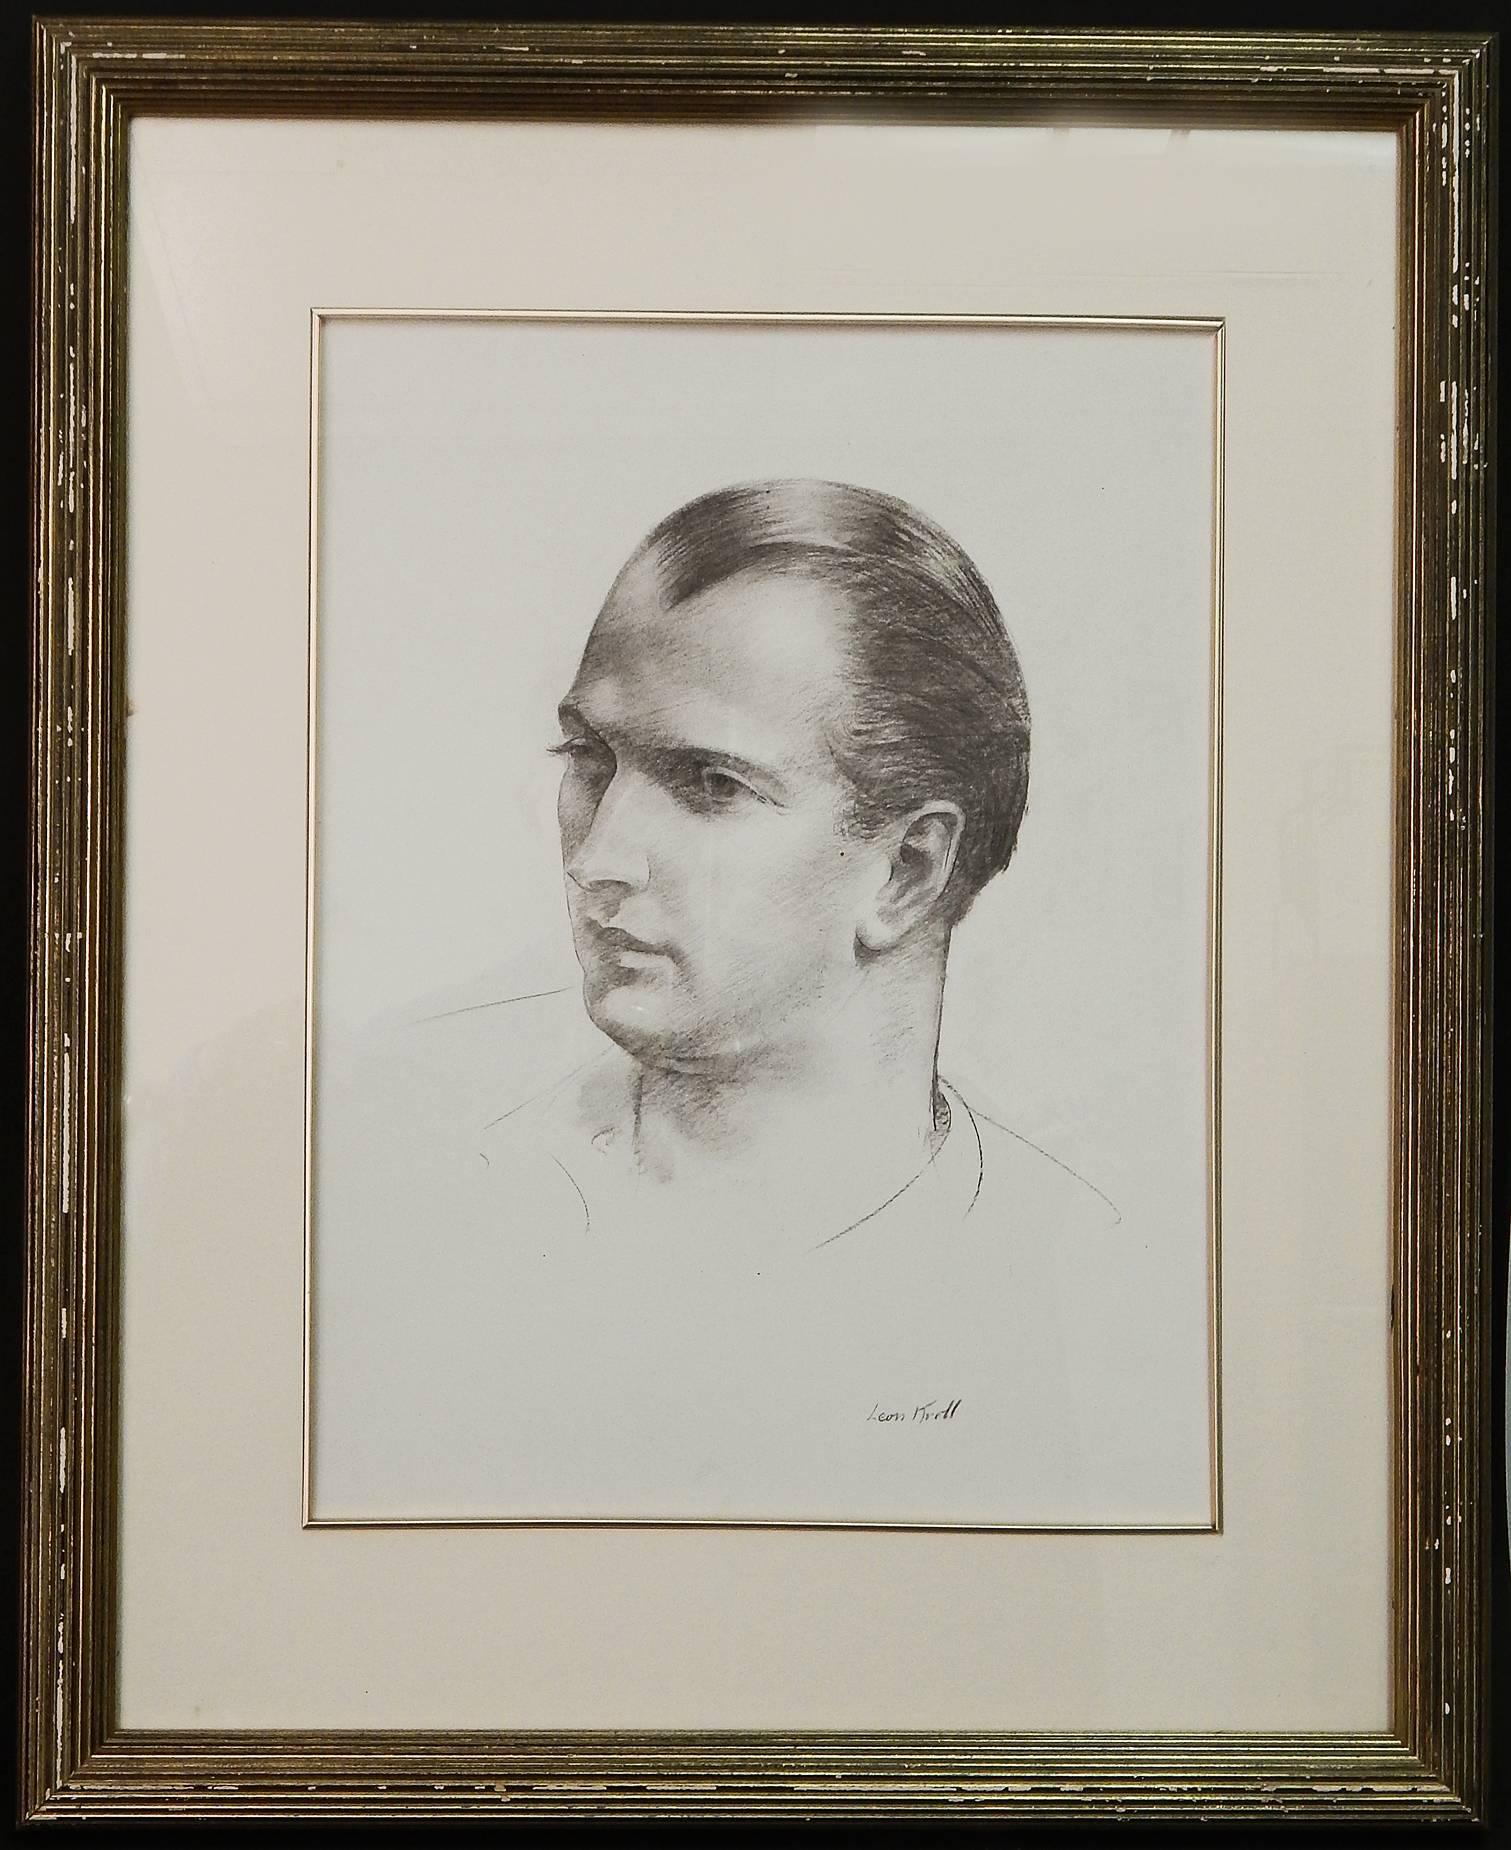 Américain « Man's Portrait, Three Quarters View » (Le portrait d'homme, vue sur les trois quarts), dessin puissant de Leon Kroll en vente